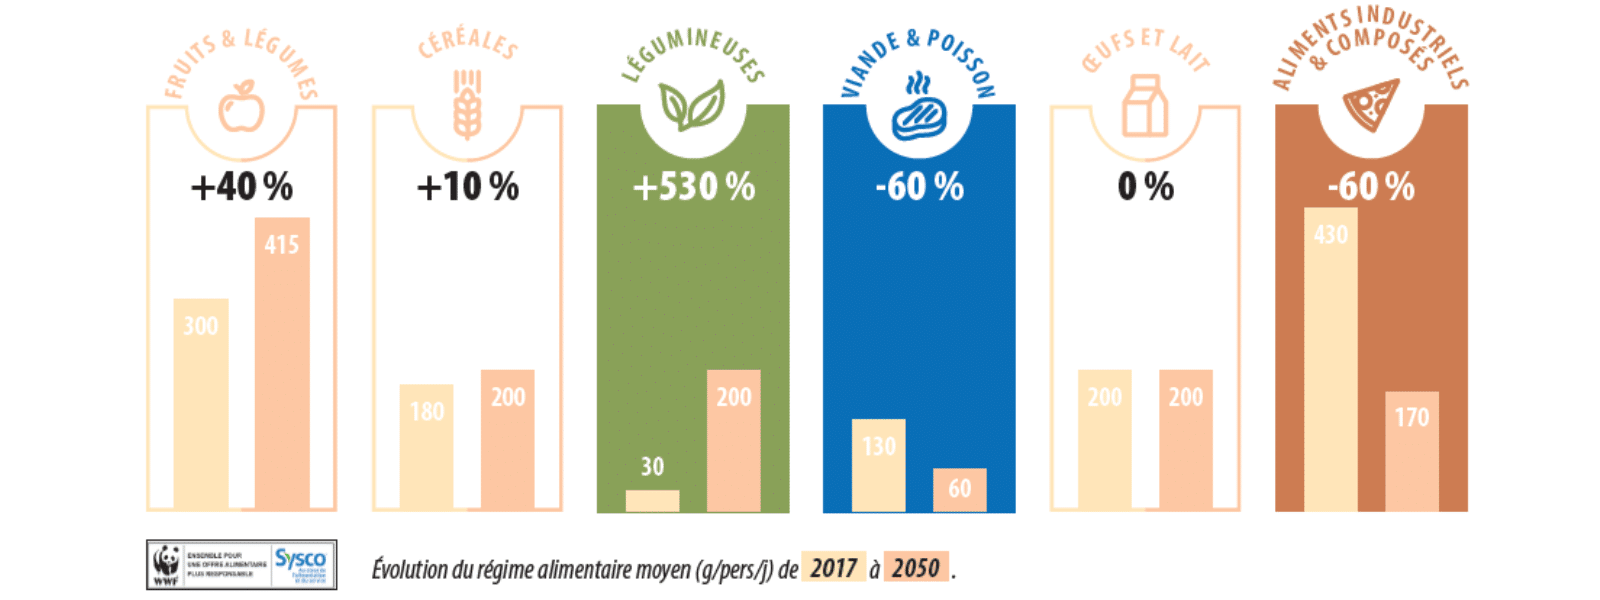 Évolution du régime alimentaire moyen de 2017 à 2050